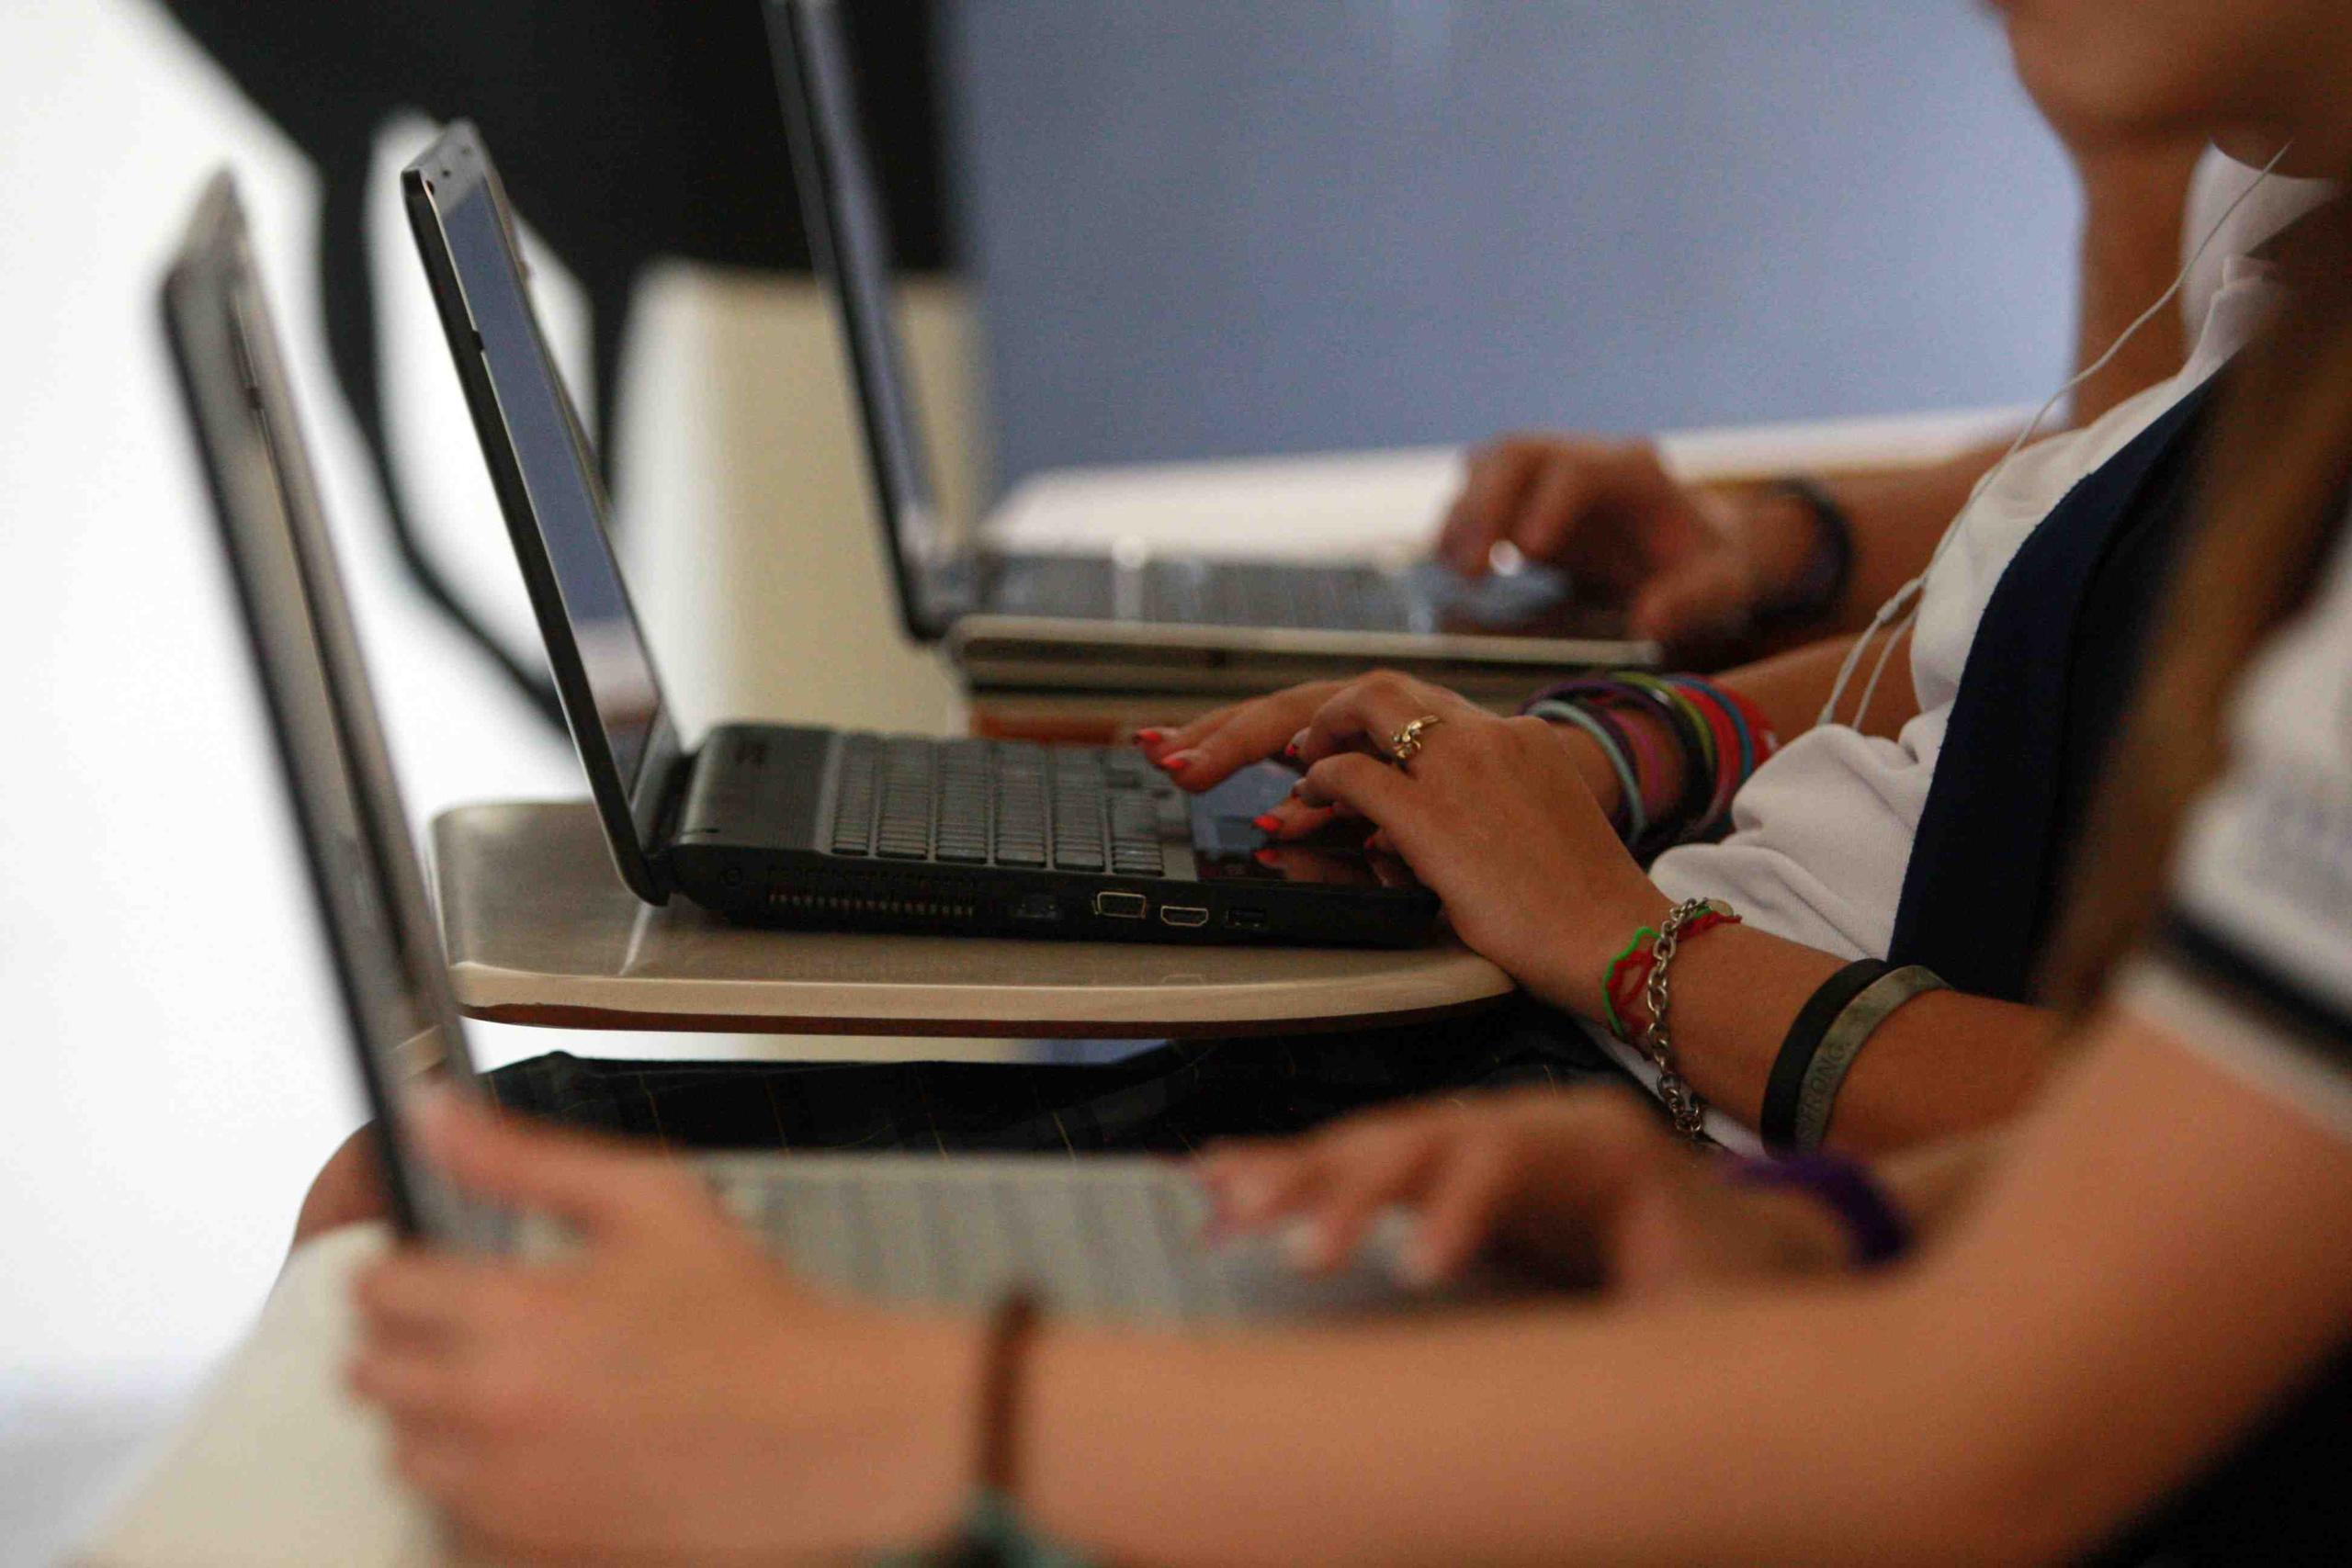 El Departamento de Educación adjudicó el año pasado un proceso de licitación para adquirir unas 140,000 computadoras para estudiantes de escuelas públicas. (GFR Media)